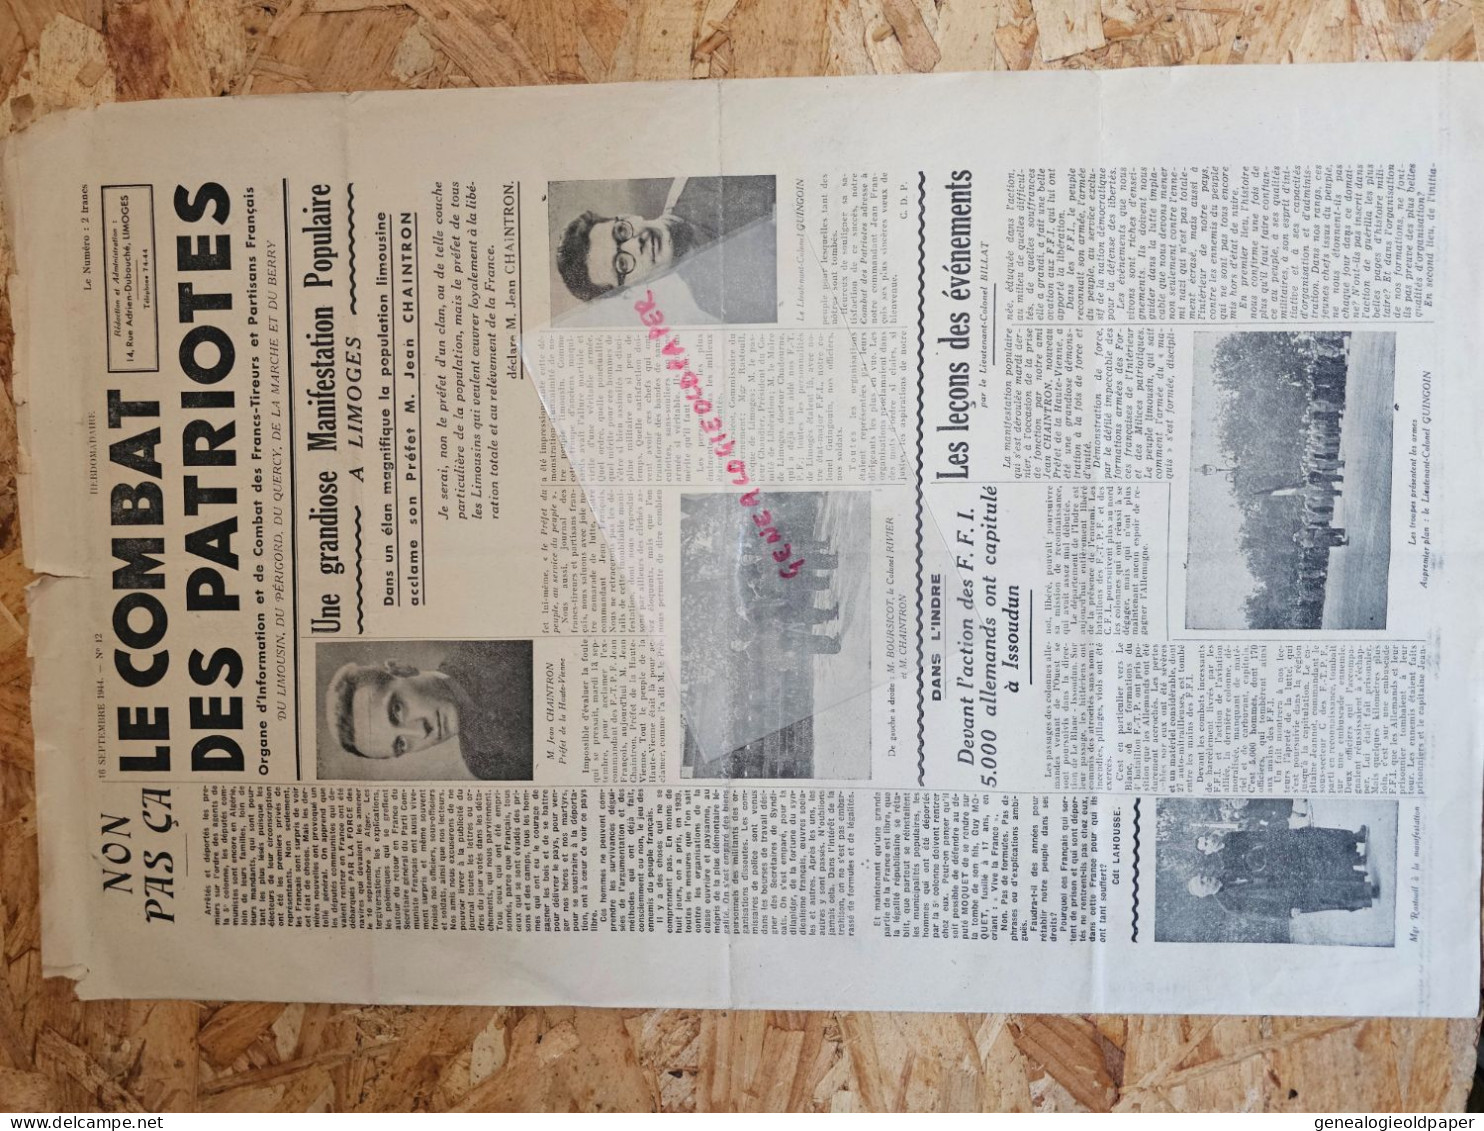 87-LIMOGES- COMBAT DES PATRIOTES-16 -9-1944-JEAN CHAINTRON PREFET-GUINGOUIN-BOURSICOT-RESISTANCE FFI-CHADOURNE-ISSOUDUN - Documents Historiques